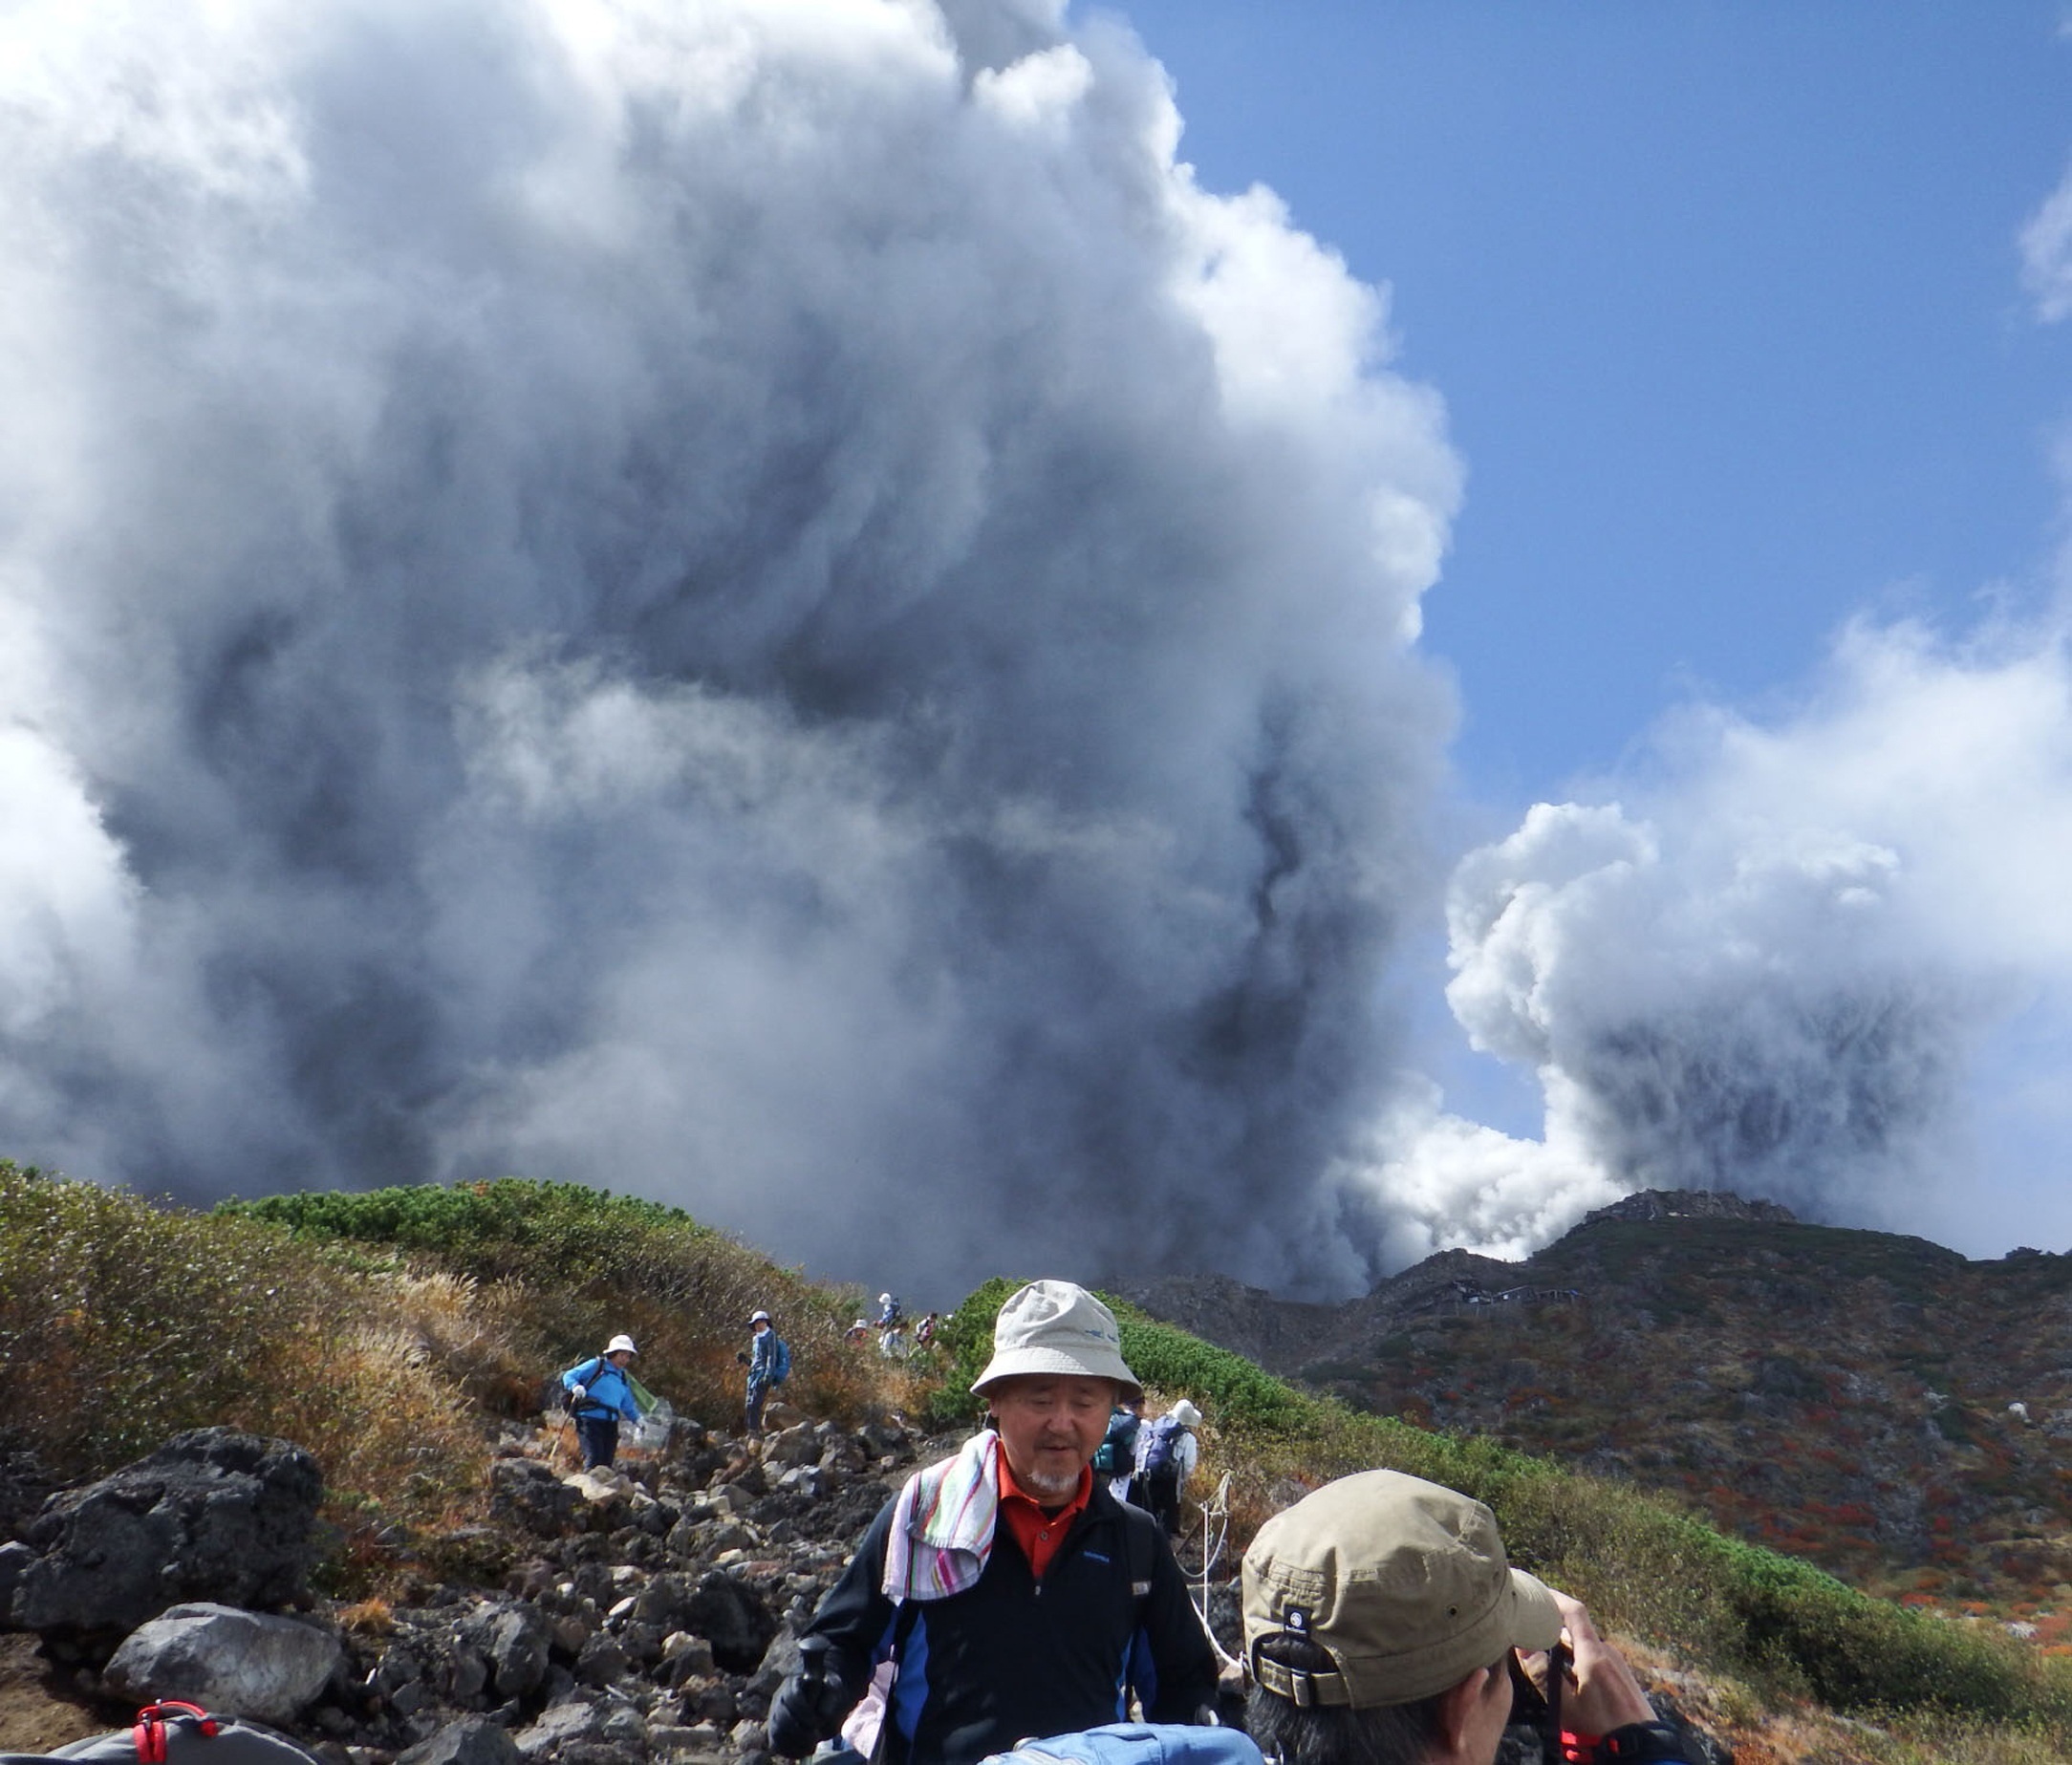 Опасным факторам возникающим при извержении вулканов